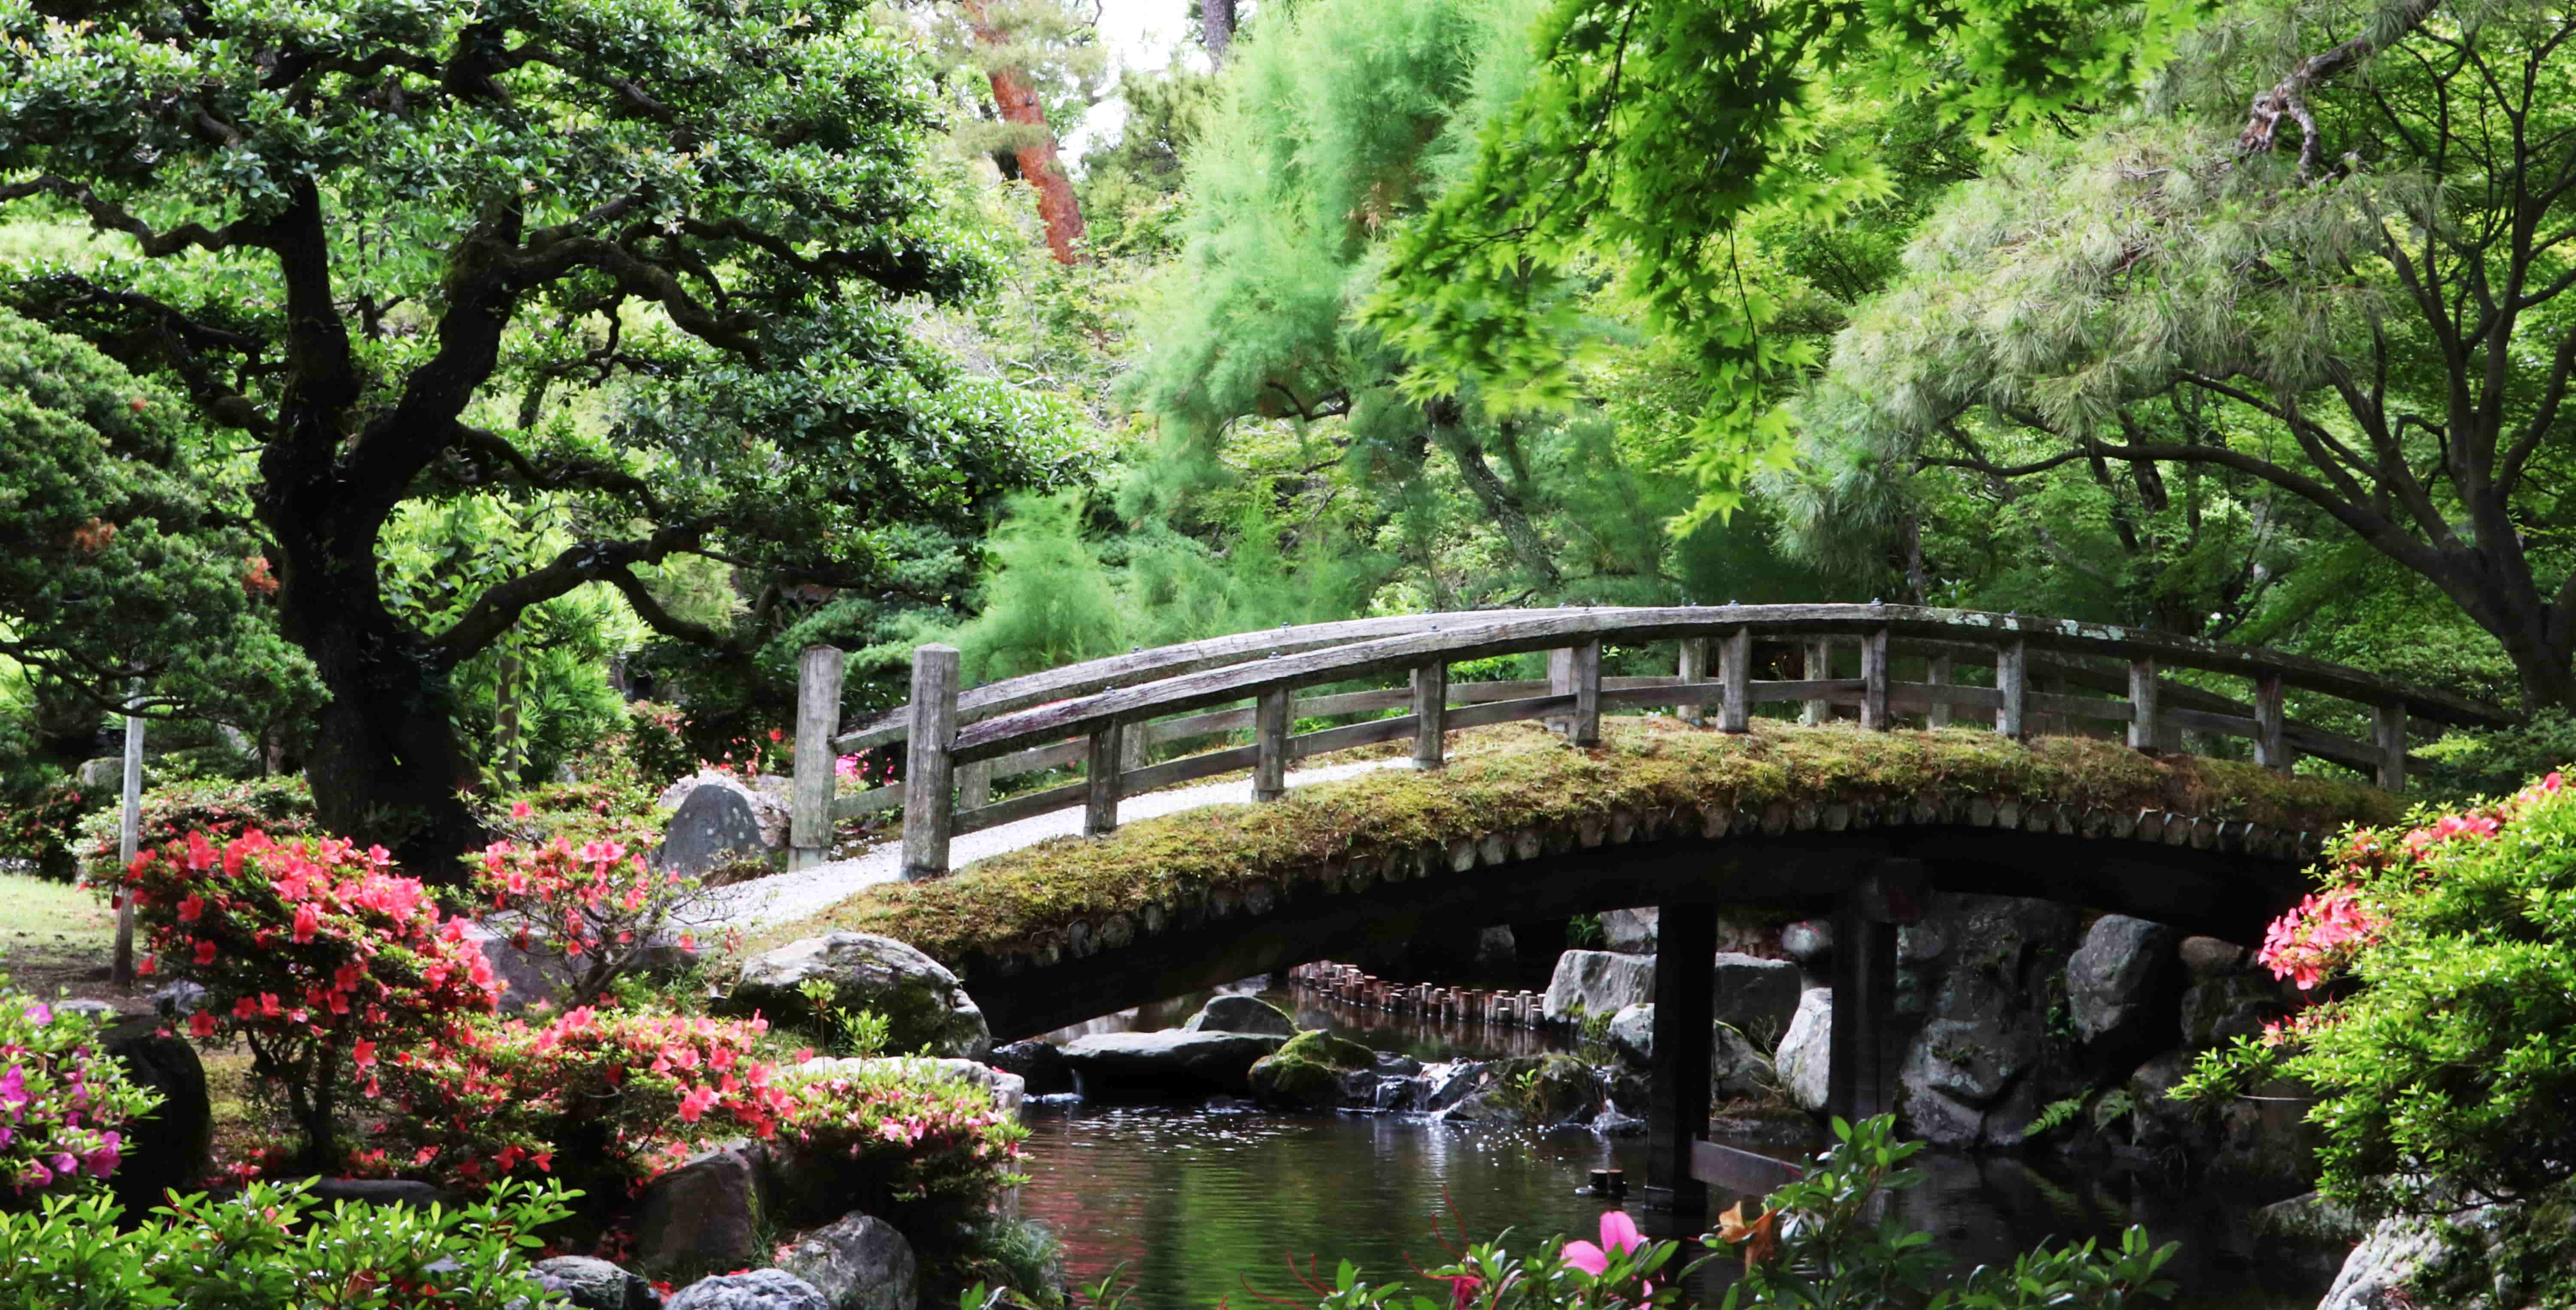 Bridge in a garden in Japan hatzav aviv photography